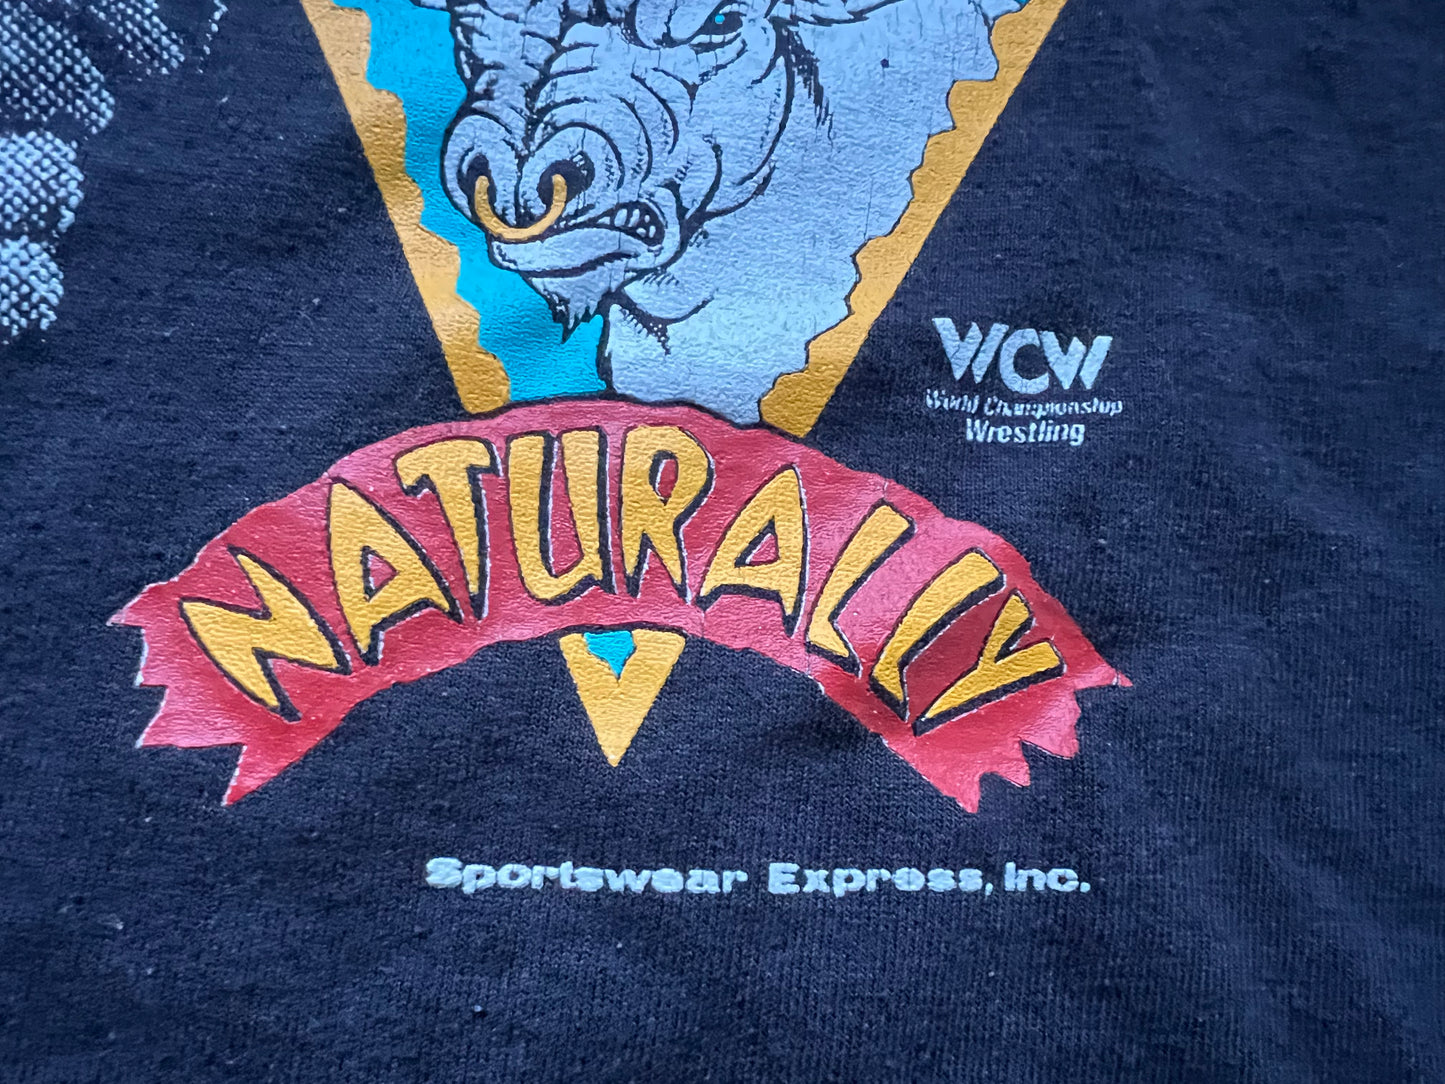 1992 WCW “The Natural” Dustin Rhodes shirt